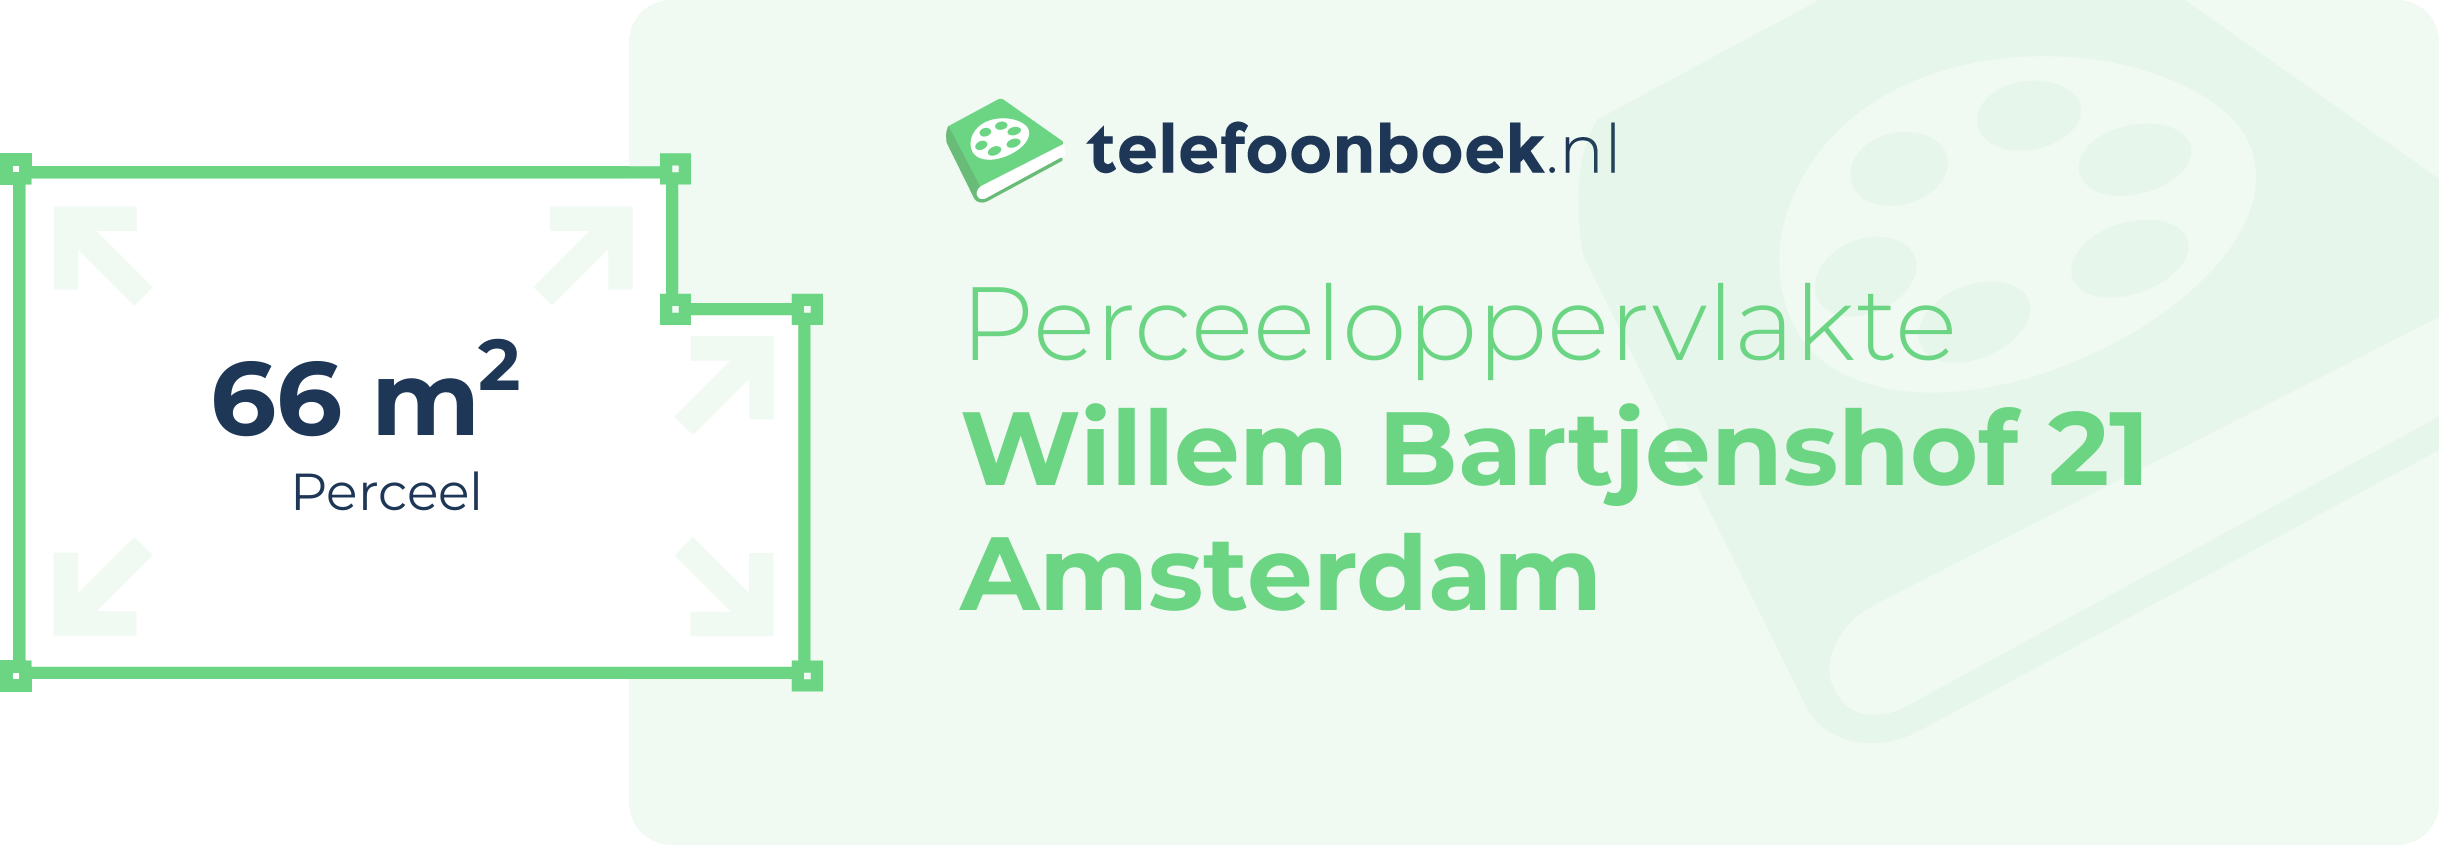 Perceeloppervlakte Willem Bartjenshof 21 Amsterdam